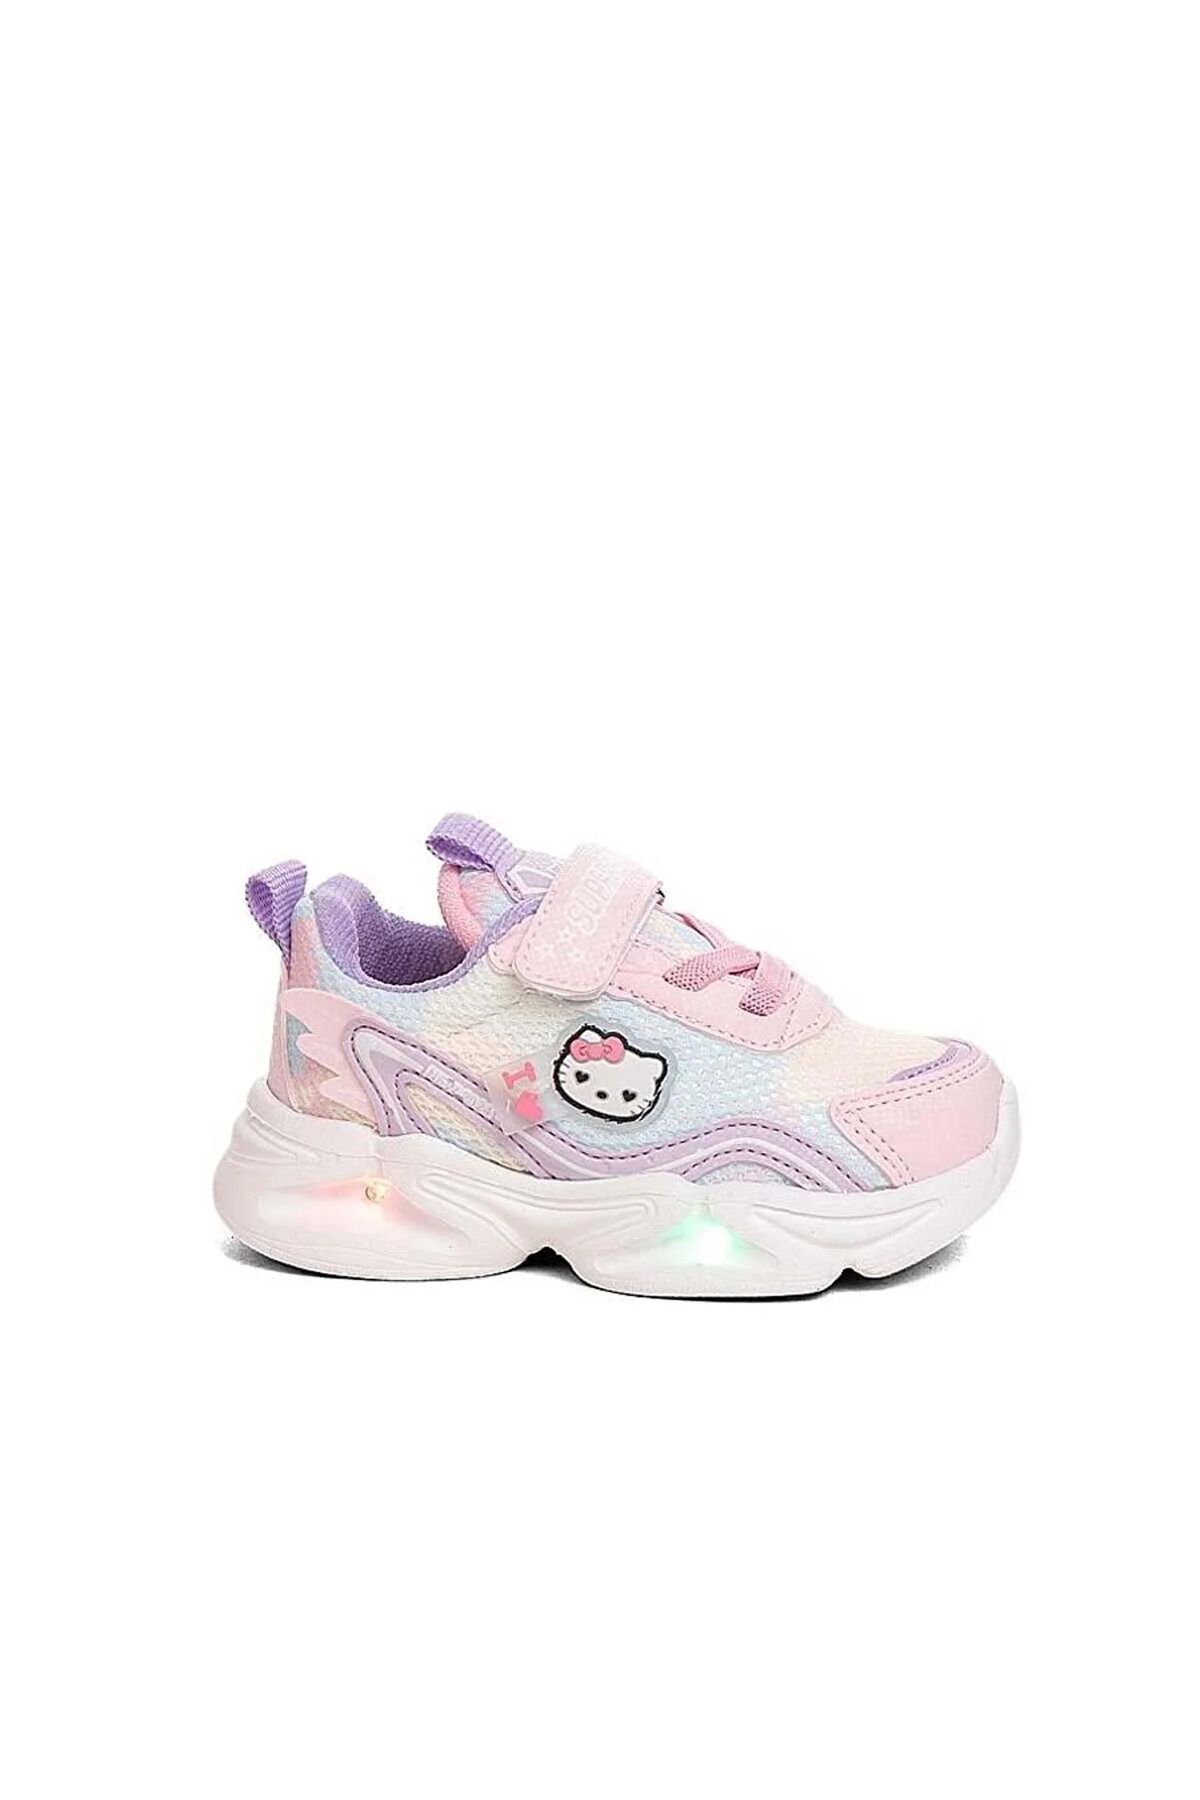 iskarpino Işıklı Hello Kity Detaylı Kız Çocuk Pudra Sneaker Yürüyüş Ayakkabısı